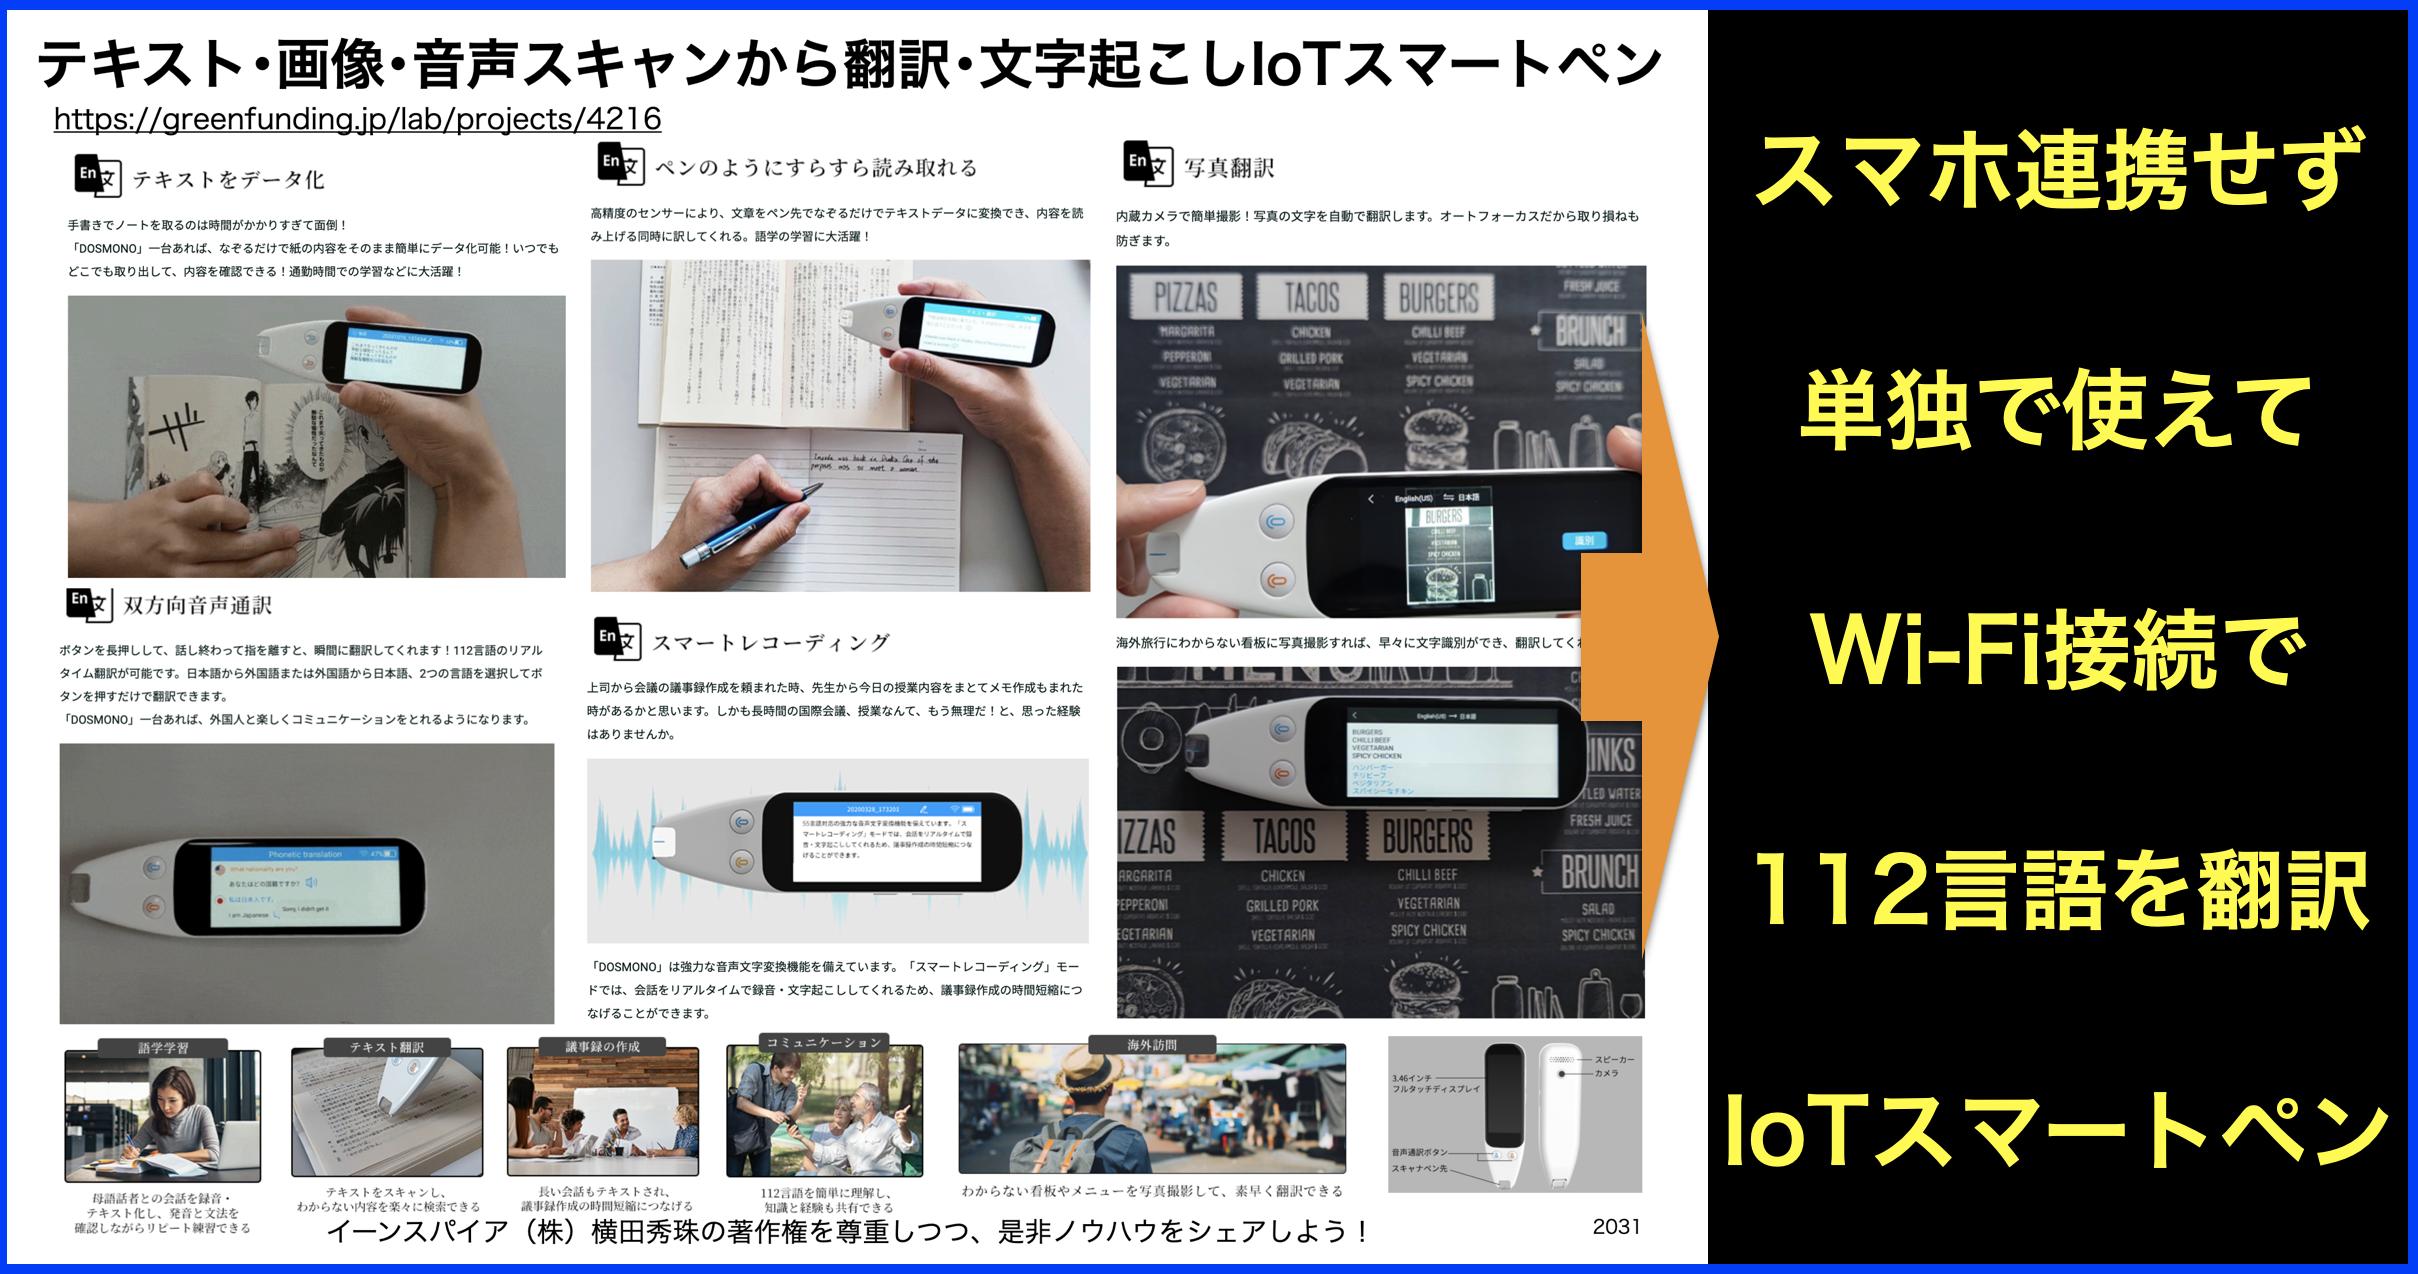 テキスト･画像･音声スキャンから翻訳や文字起こしペン型IoT